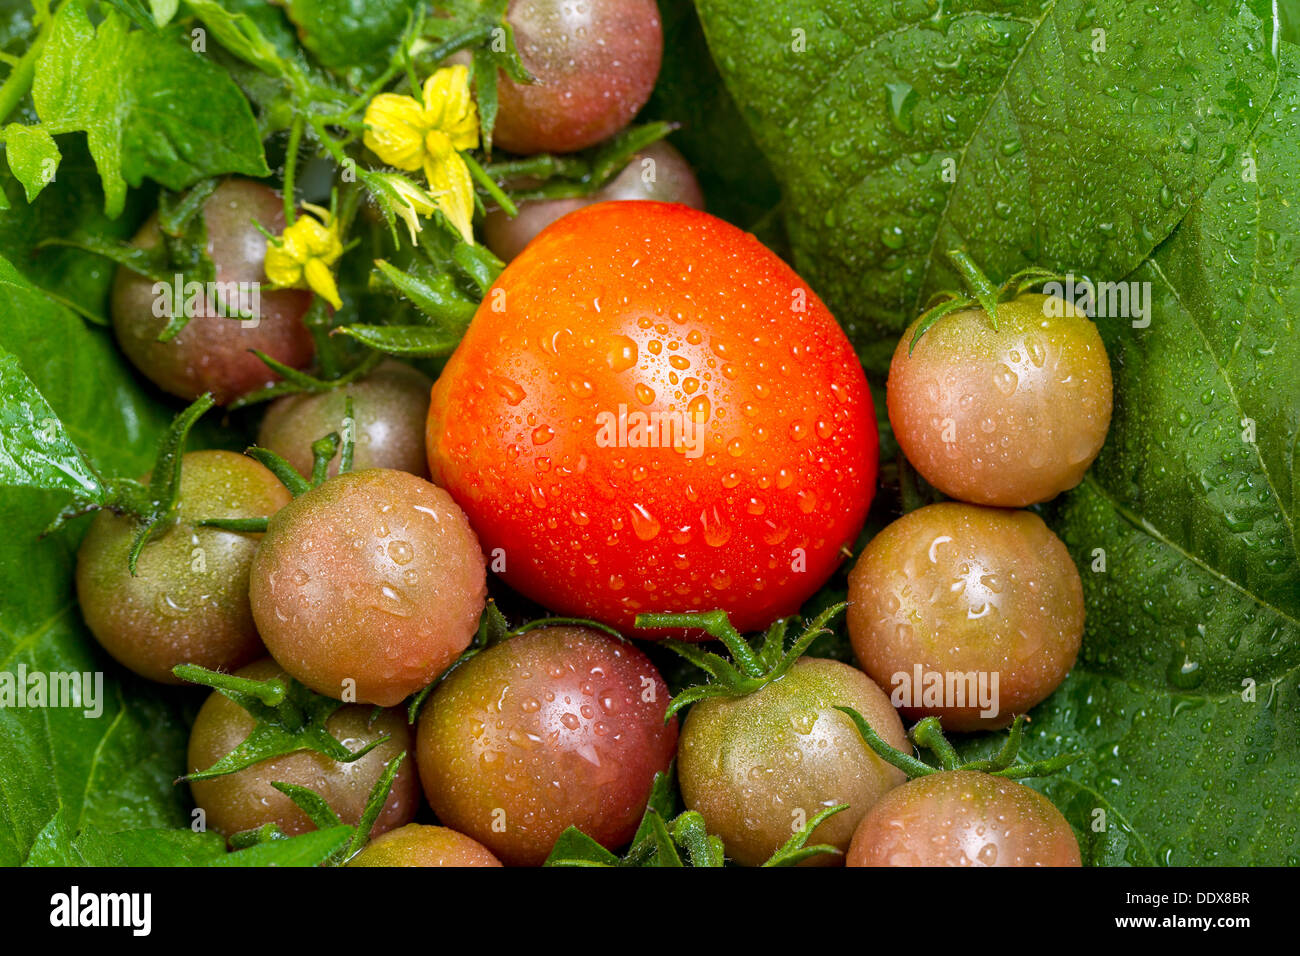 Concentrarsi sul singolo grande pomodoro maturo in una pila di appena raccolto piccoli pomodori, le goccioline di acqua su di essi, con foglie verdi e urlare Foto Stock